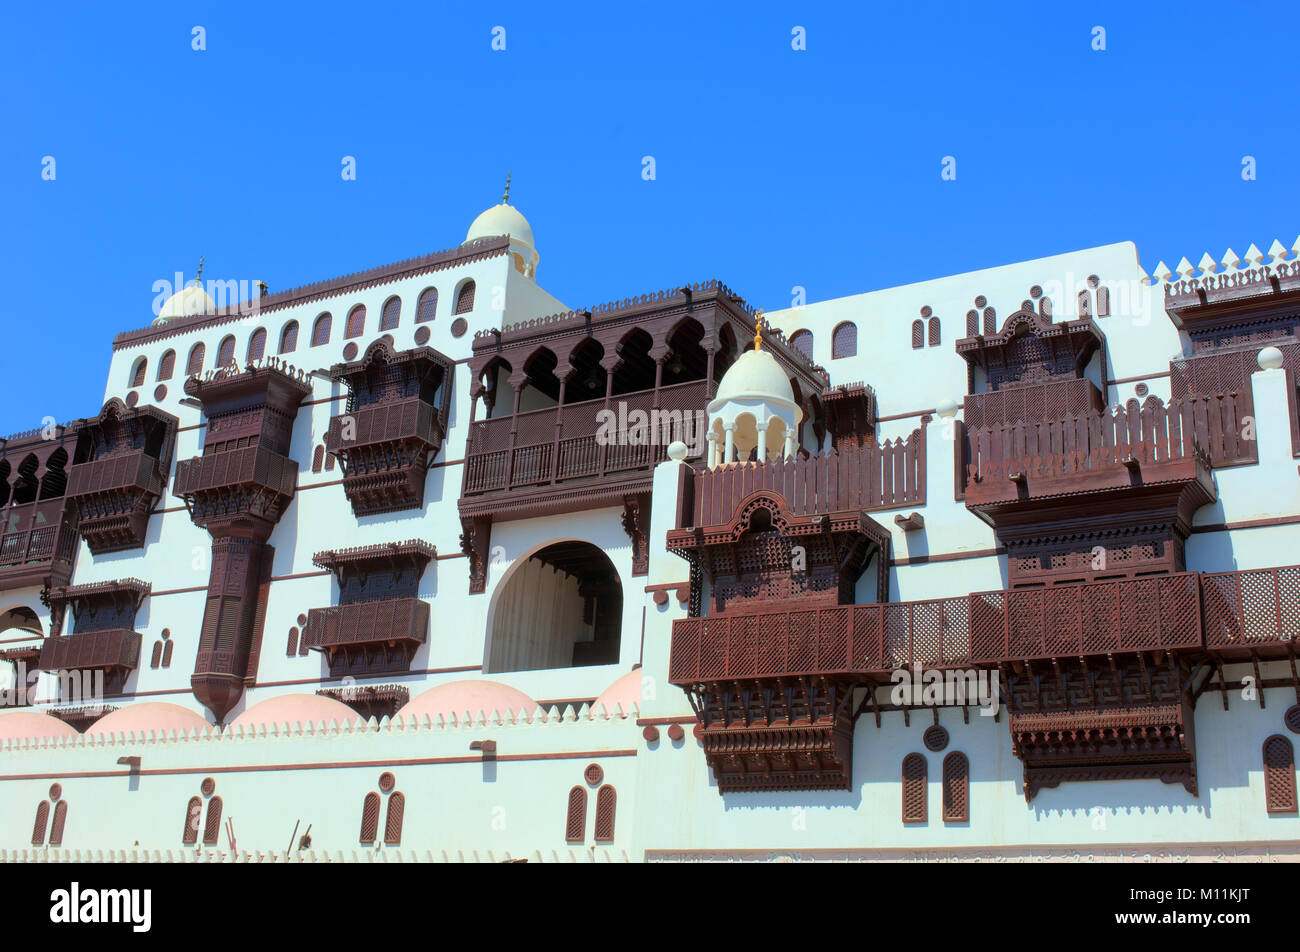 Dettagli di Jeddah vecchia moschea, Arabia Saudita Foto Stock